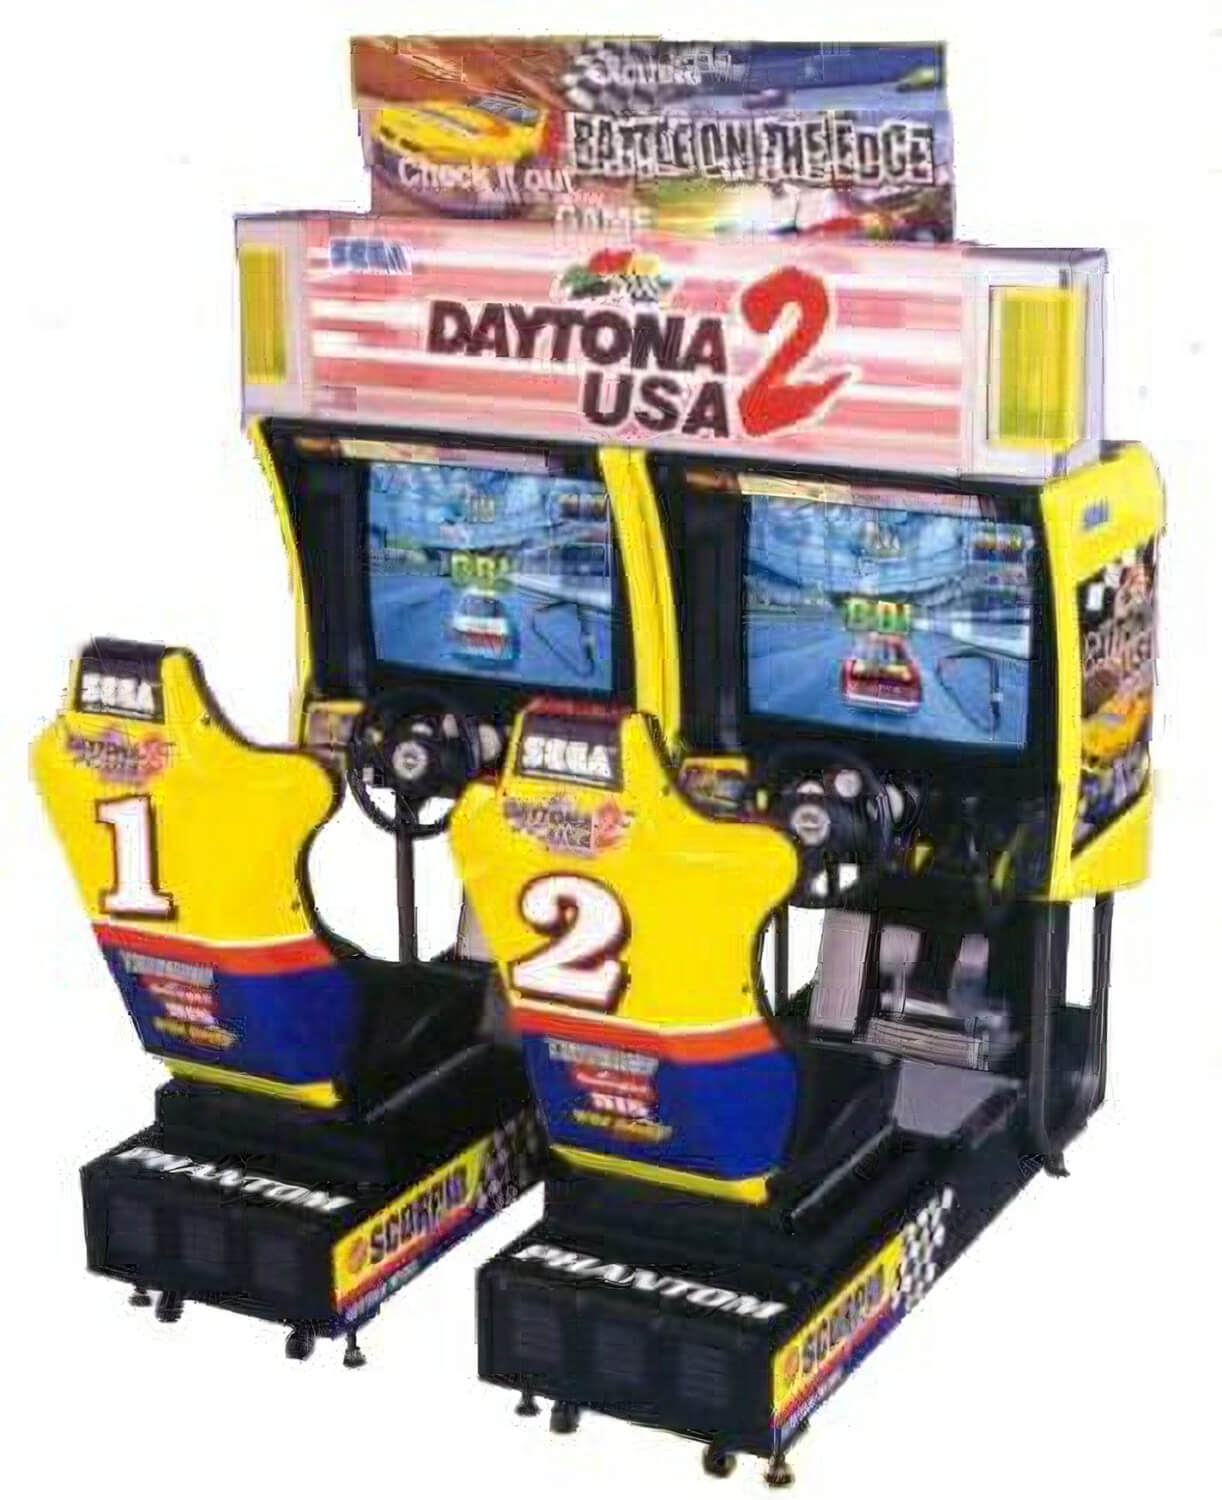 235_daytona-usa-2-arcade.jpg